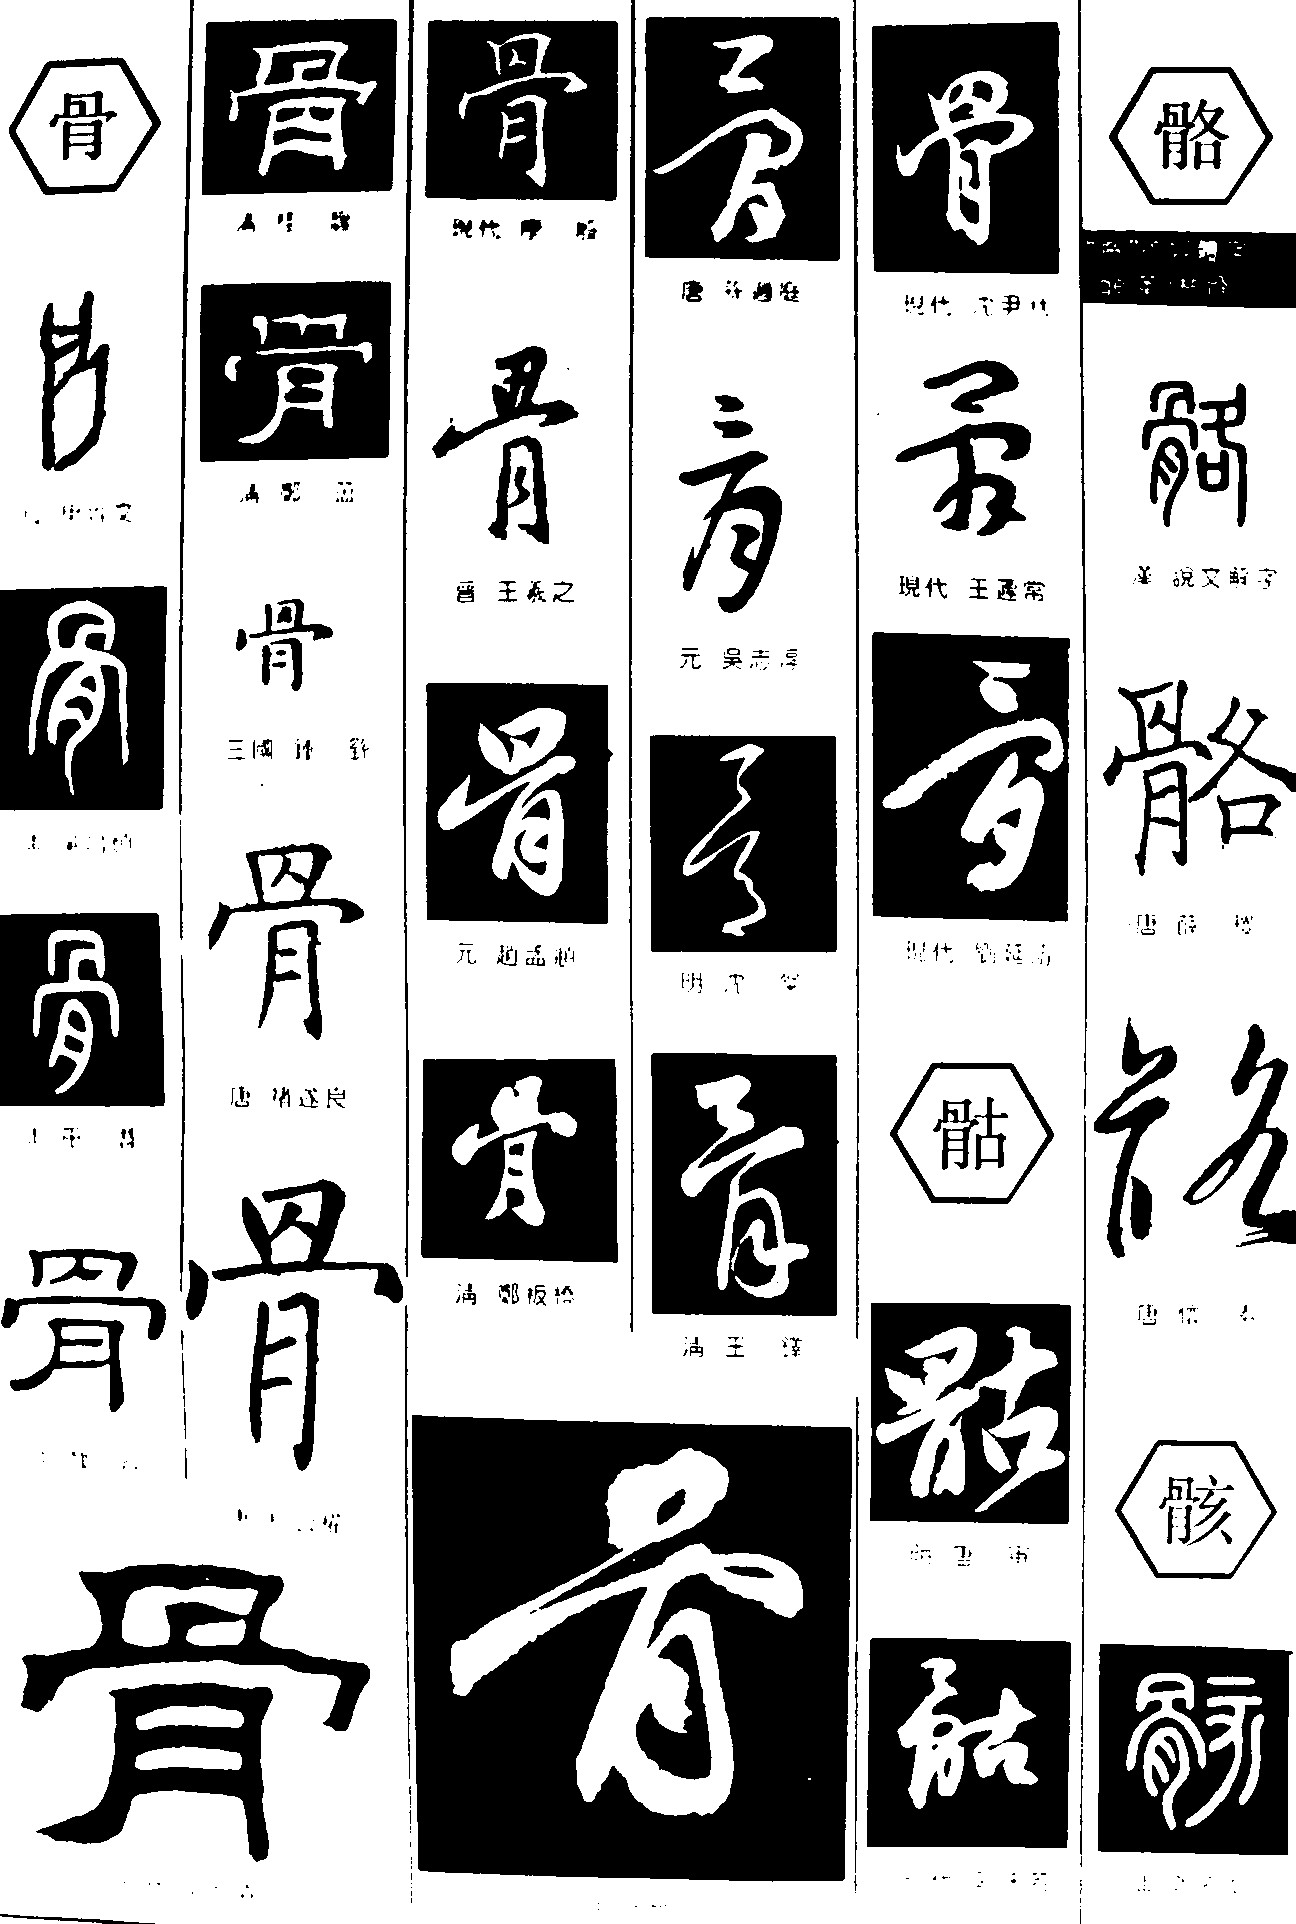 骨骷骼骸_书法字体_字体设计作品-中国字体设计网_ziti.cndesign.com